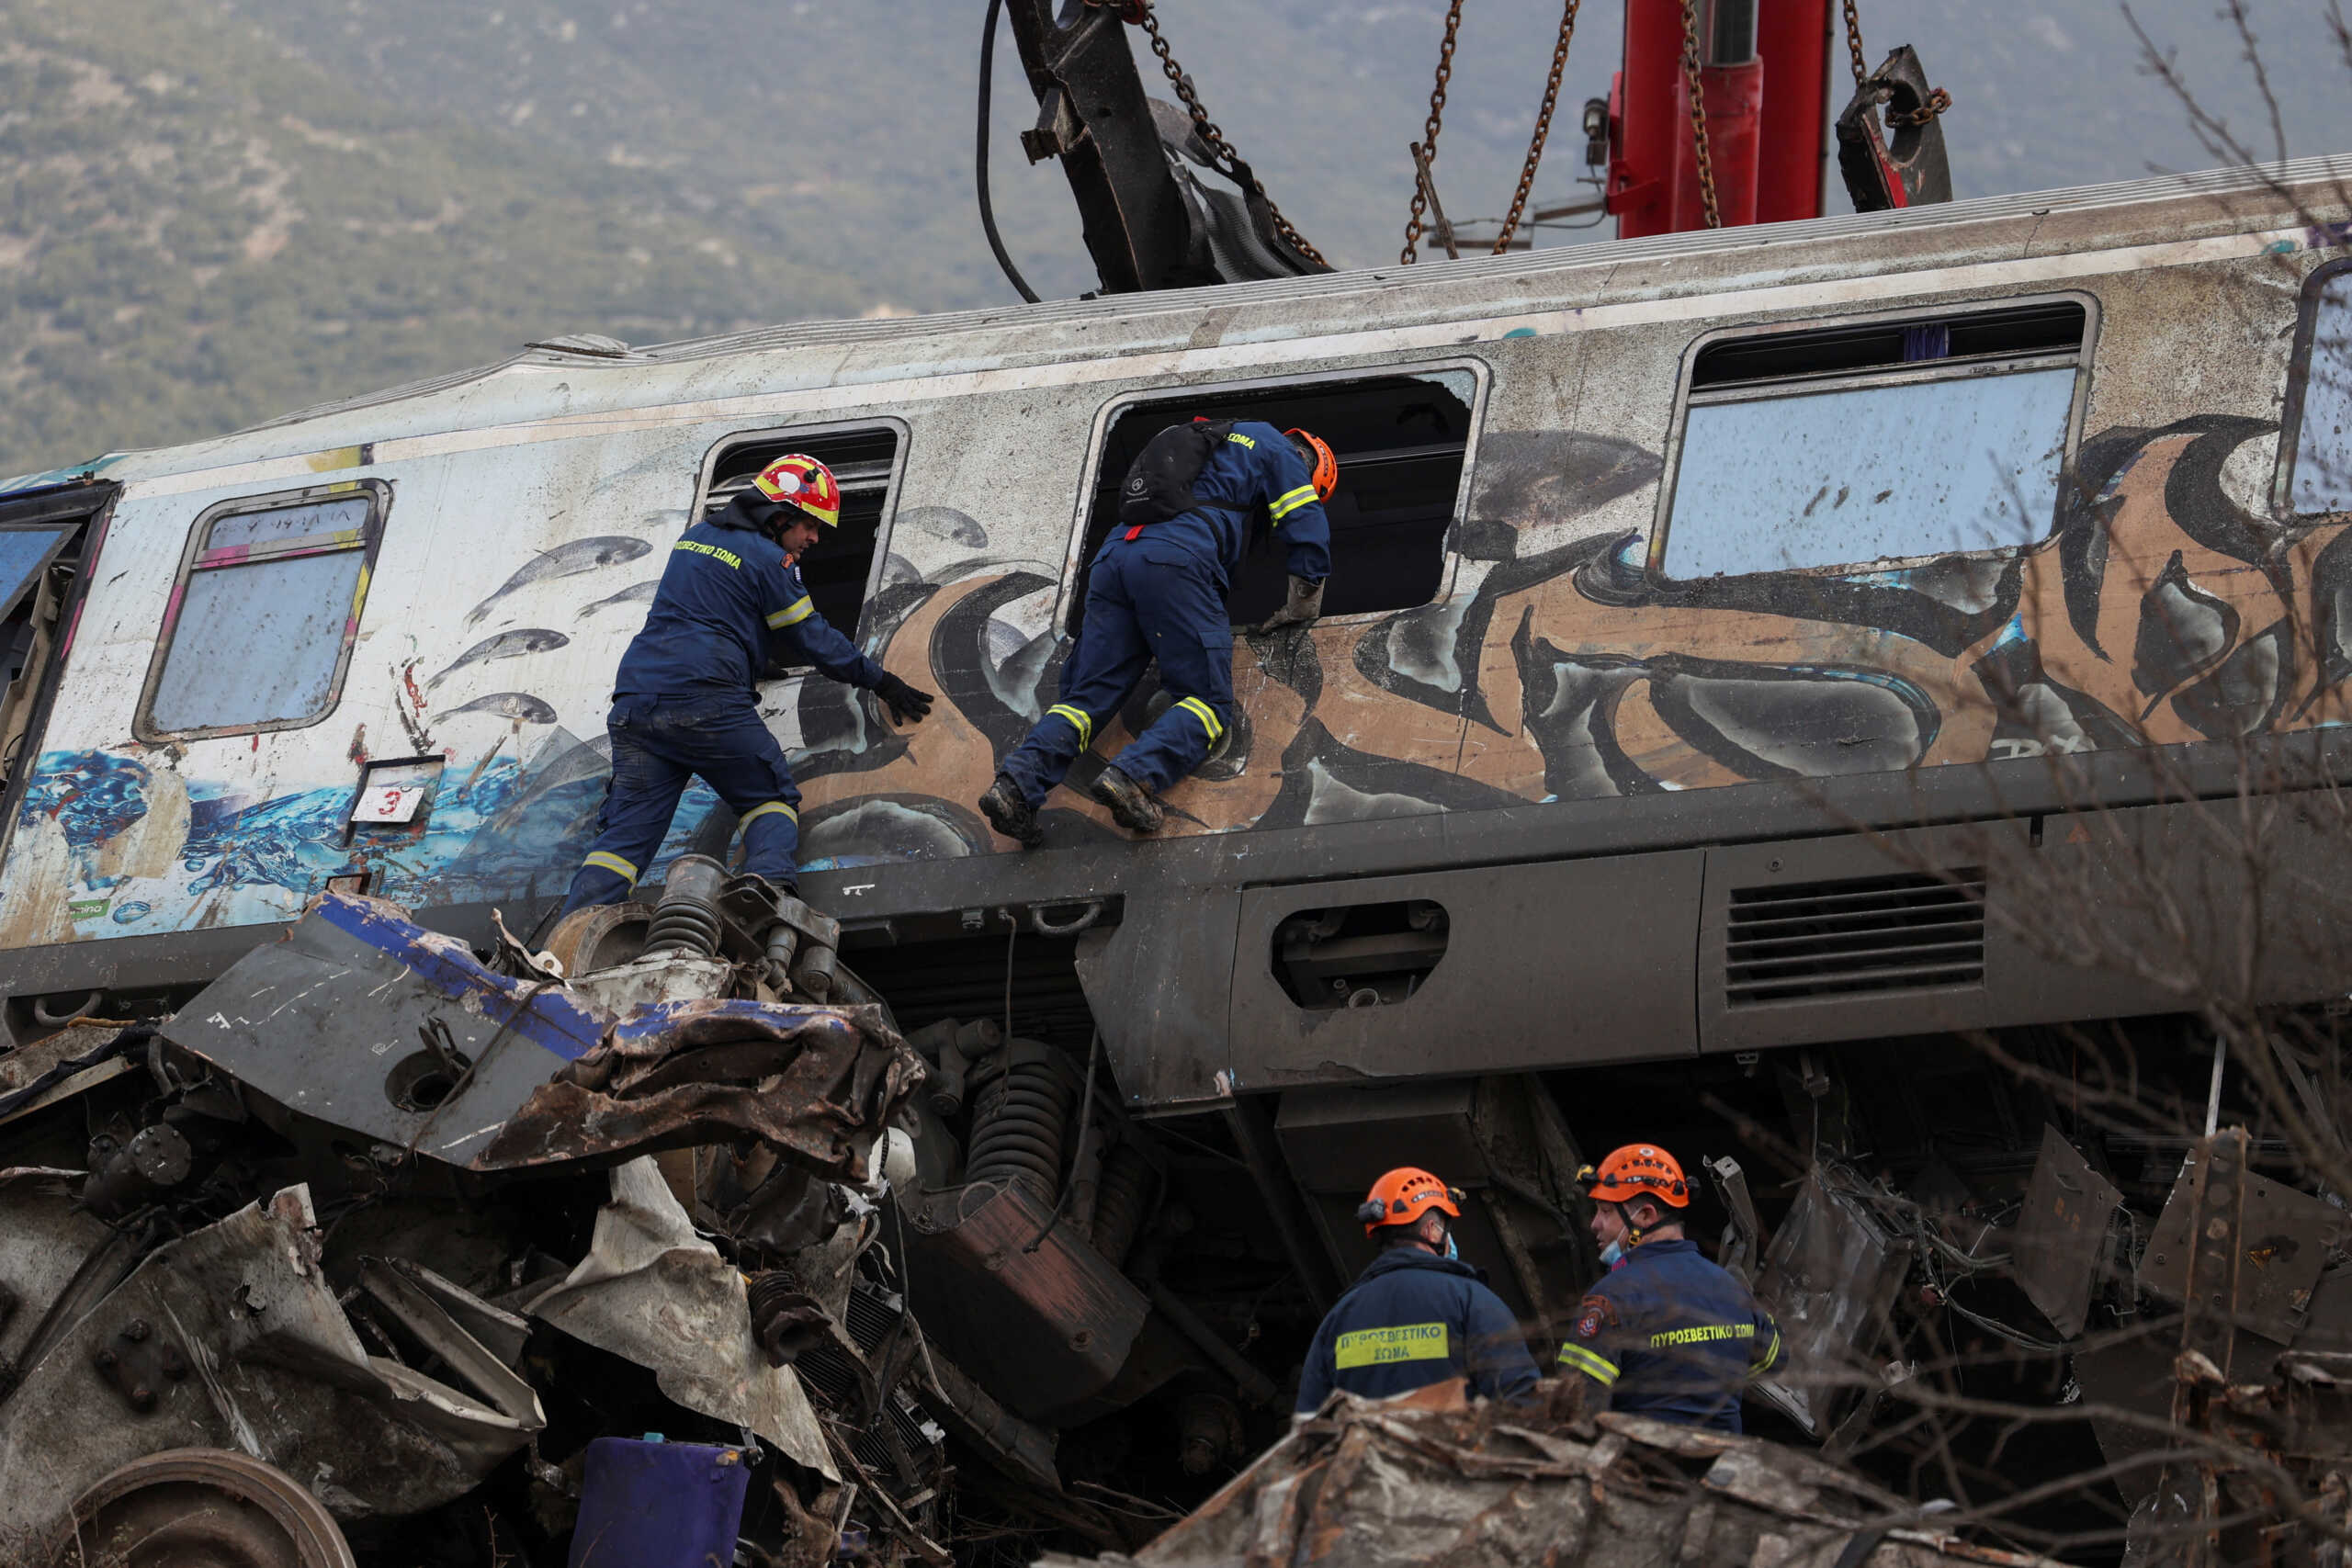 Σύγκρουση τρένων στα Τέμπη: 54 νεκροί έχουν ταυτοποιηθεί όπως ανακοίνωσε η Αστυνομία